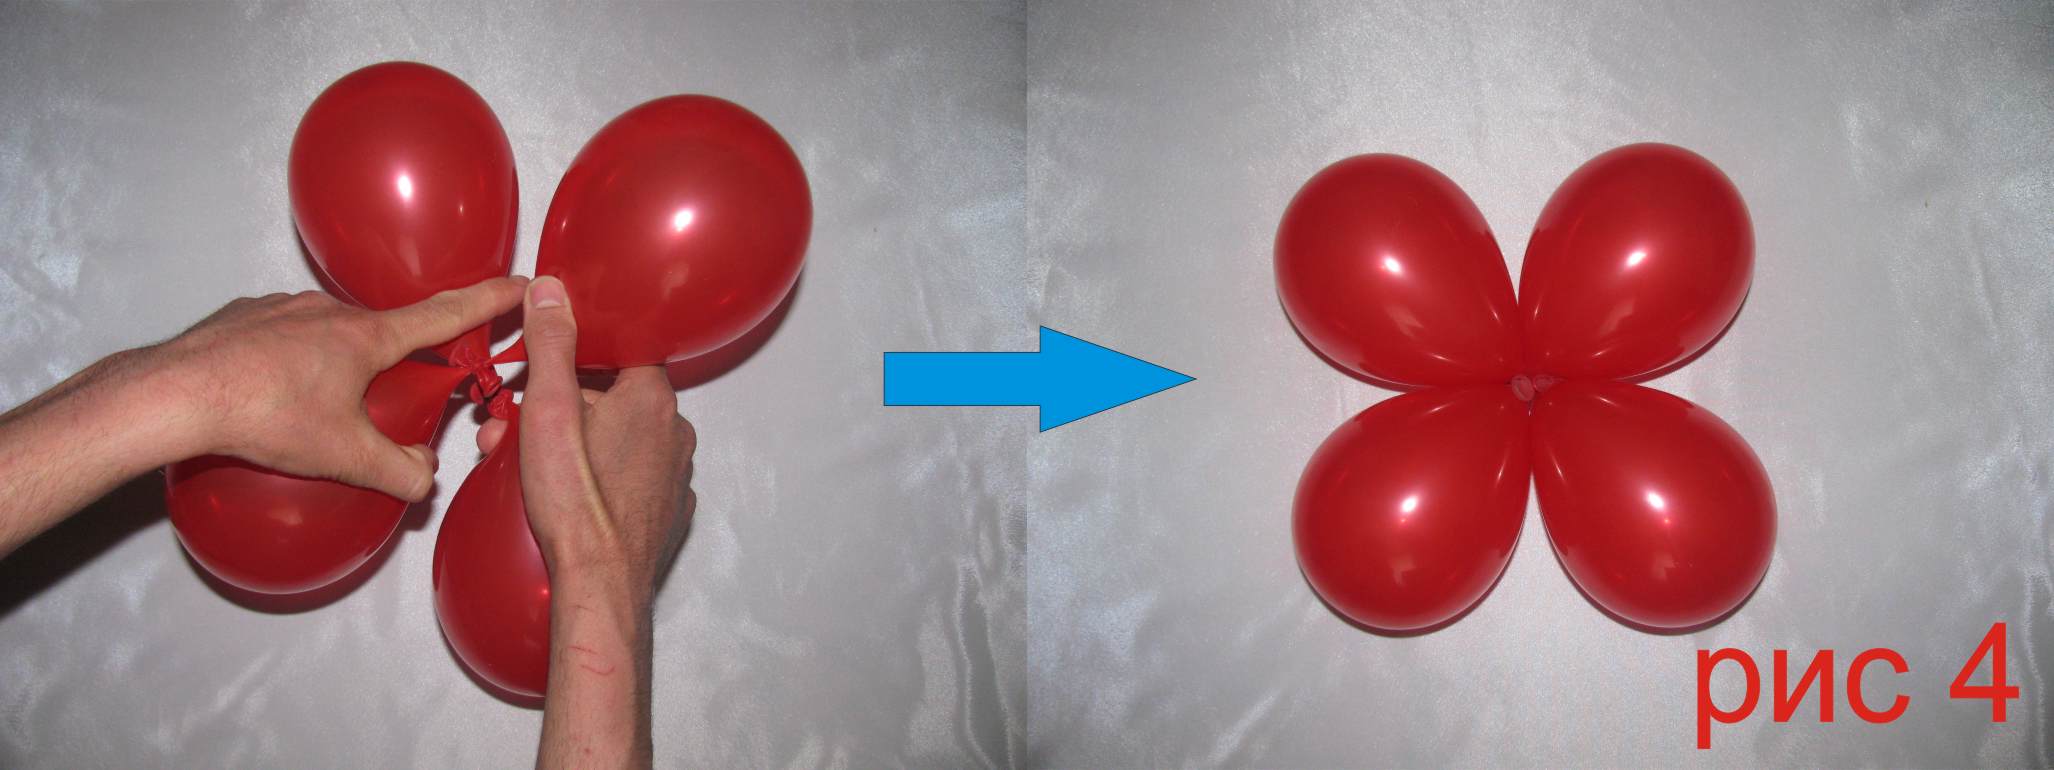 10 идей по созданию оригинальных воздушных шариков